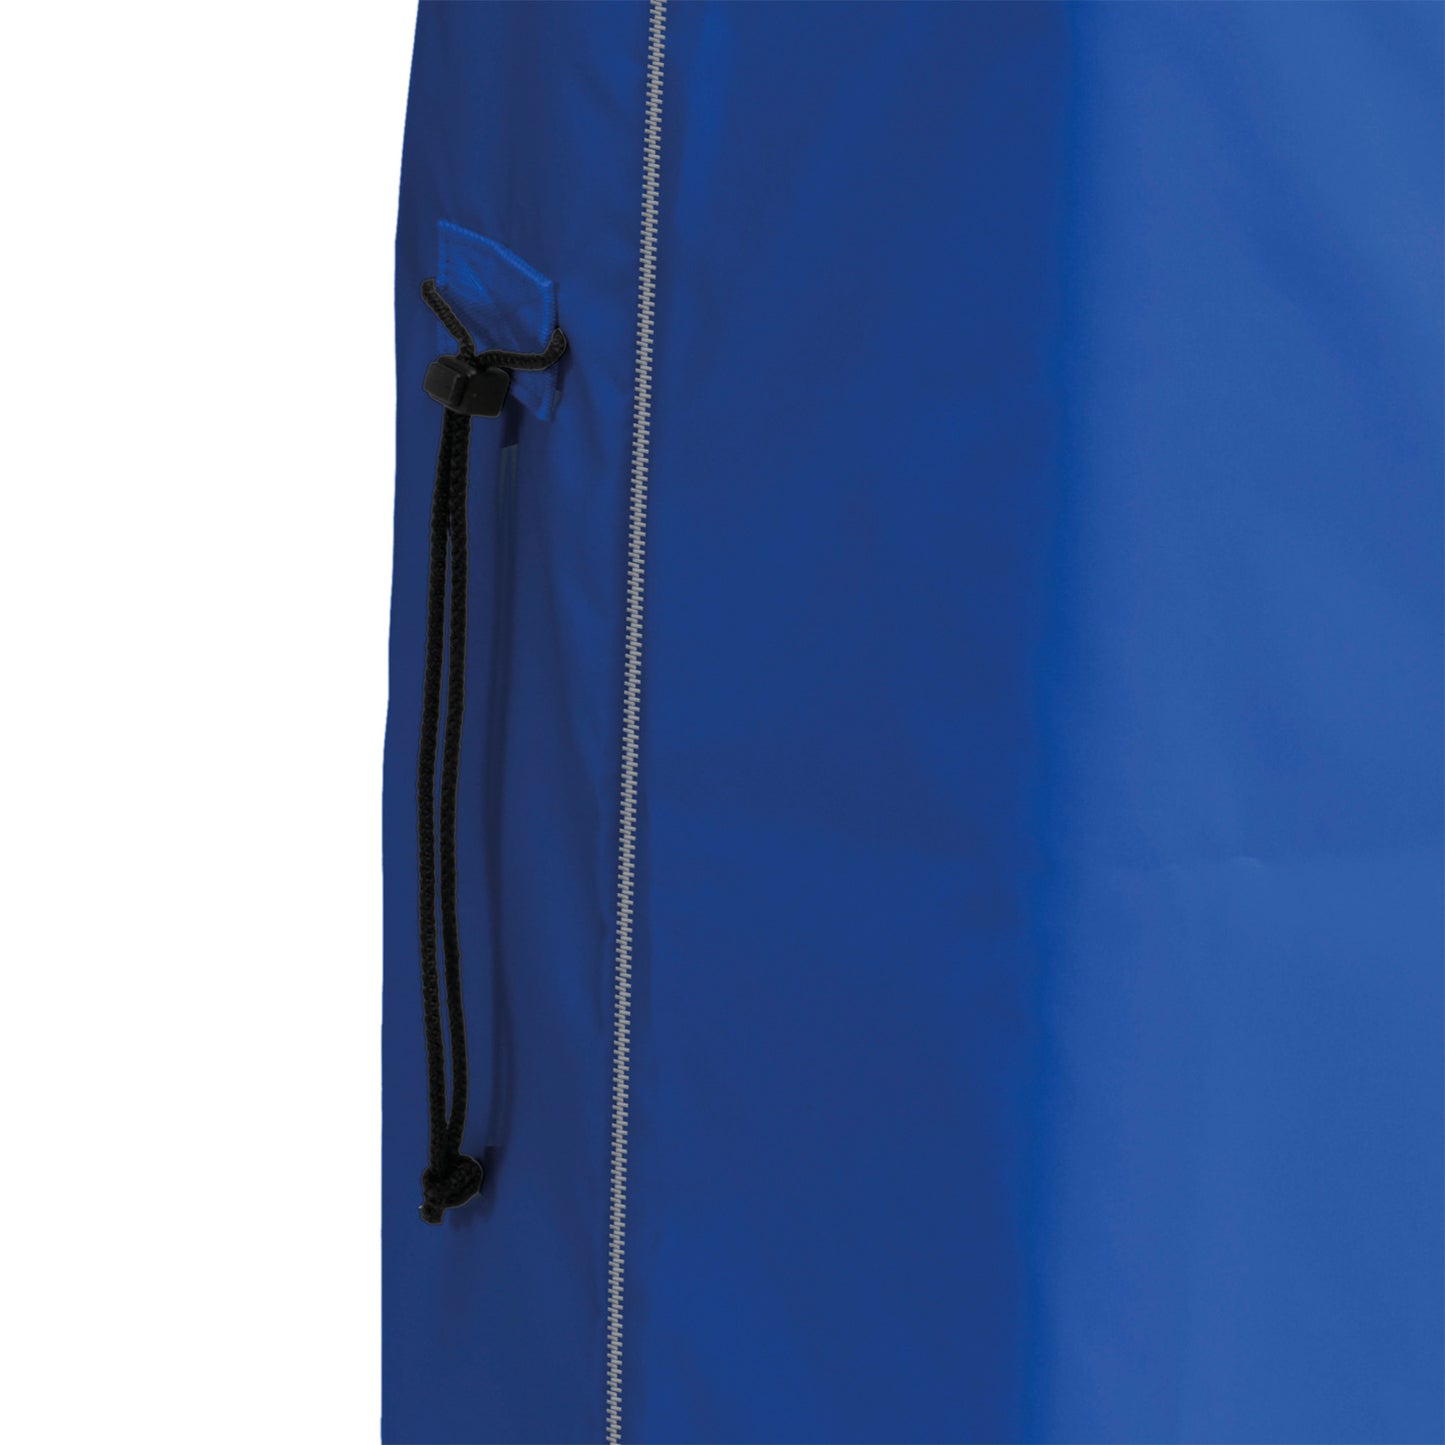 Saco lavandaria 70L, de poliéster azul com fecho de correr.   Ideal para para guardar os tradicionais sacos de nylon para uma maior discrição, fácil de limpar com esfregona húmida.